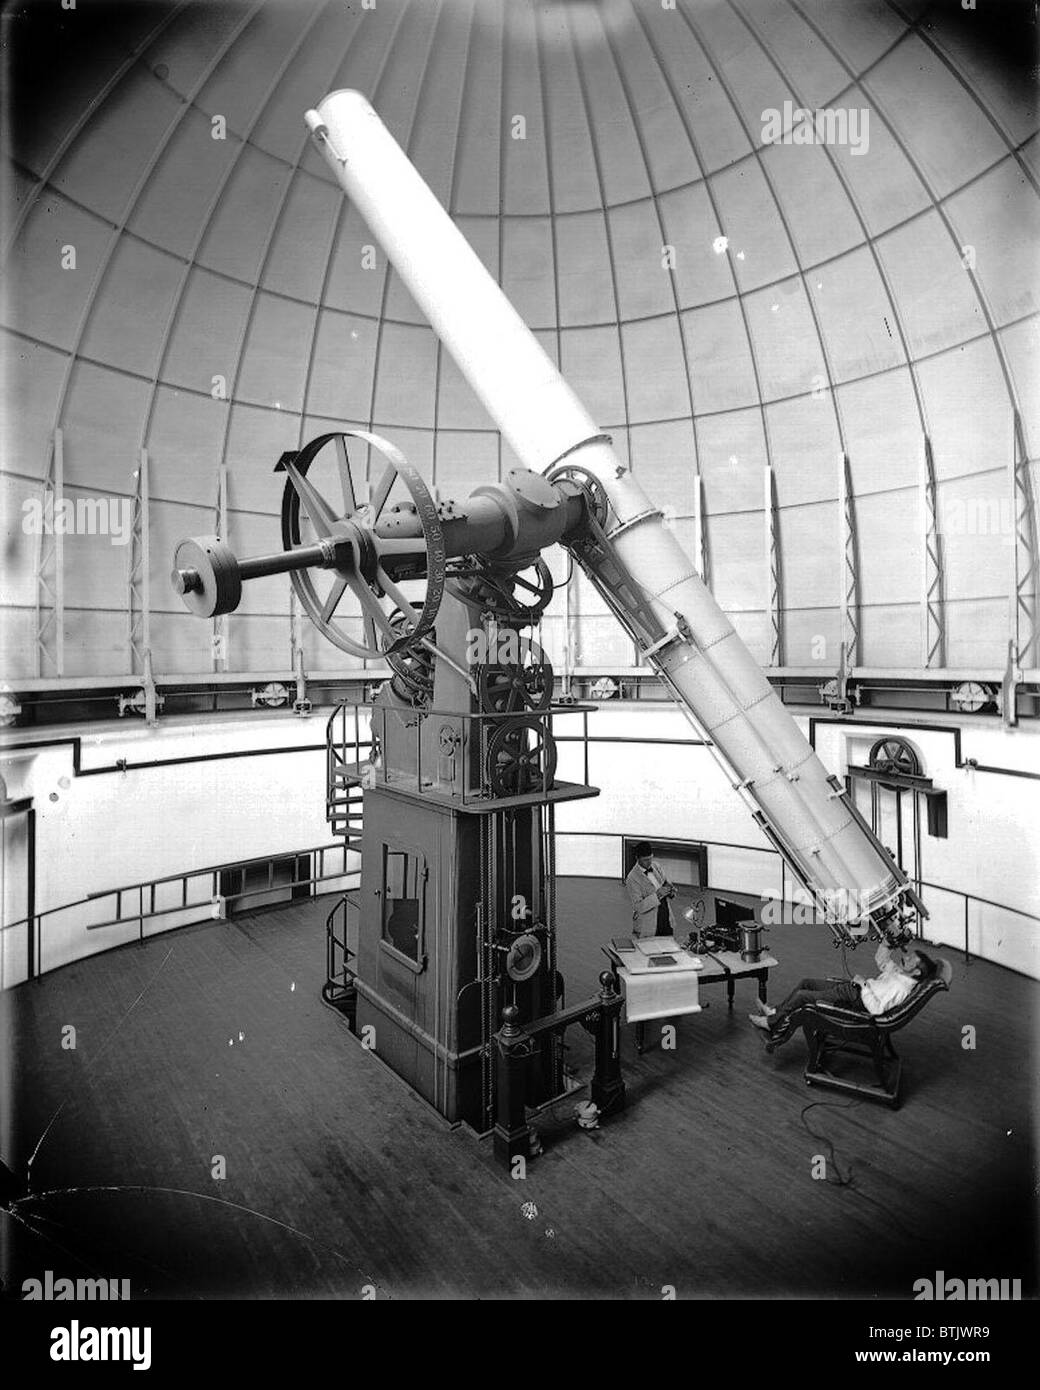 Astronomie, das 26-Zoll-Teleskop des US Naval Observatory. Wenn sie zum  ersten Mal war installiert, im Jahre 1873 es das größte Refracting Teleskop  der Welt. ca. 1896 Stockfotografie - Alamy